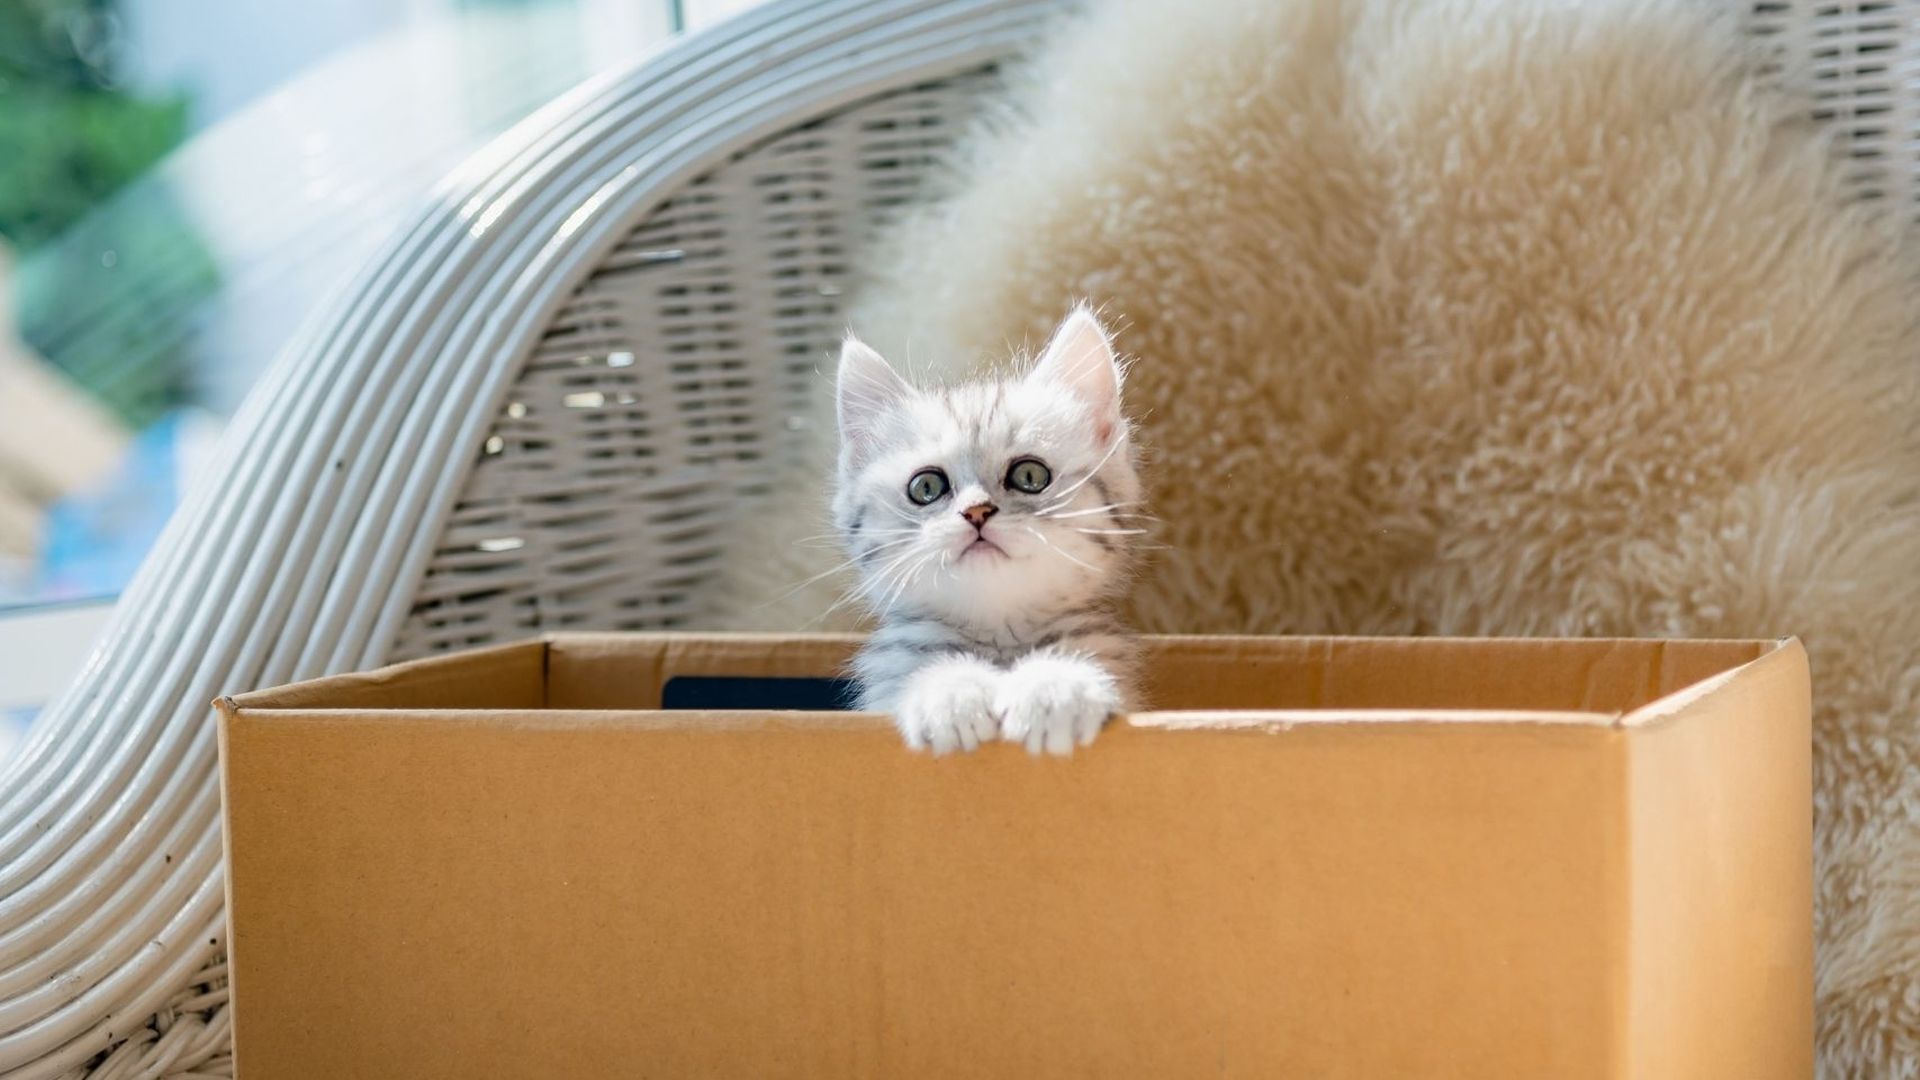 Les chats aiment tant s’asseoir dans des boîtes, qu’ils se font avoir par illusion d’optique